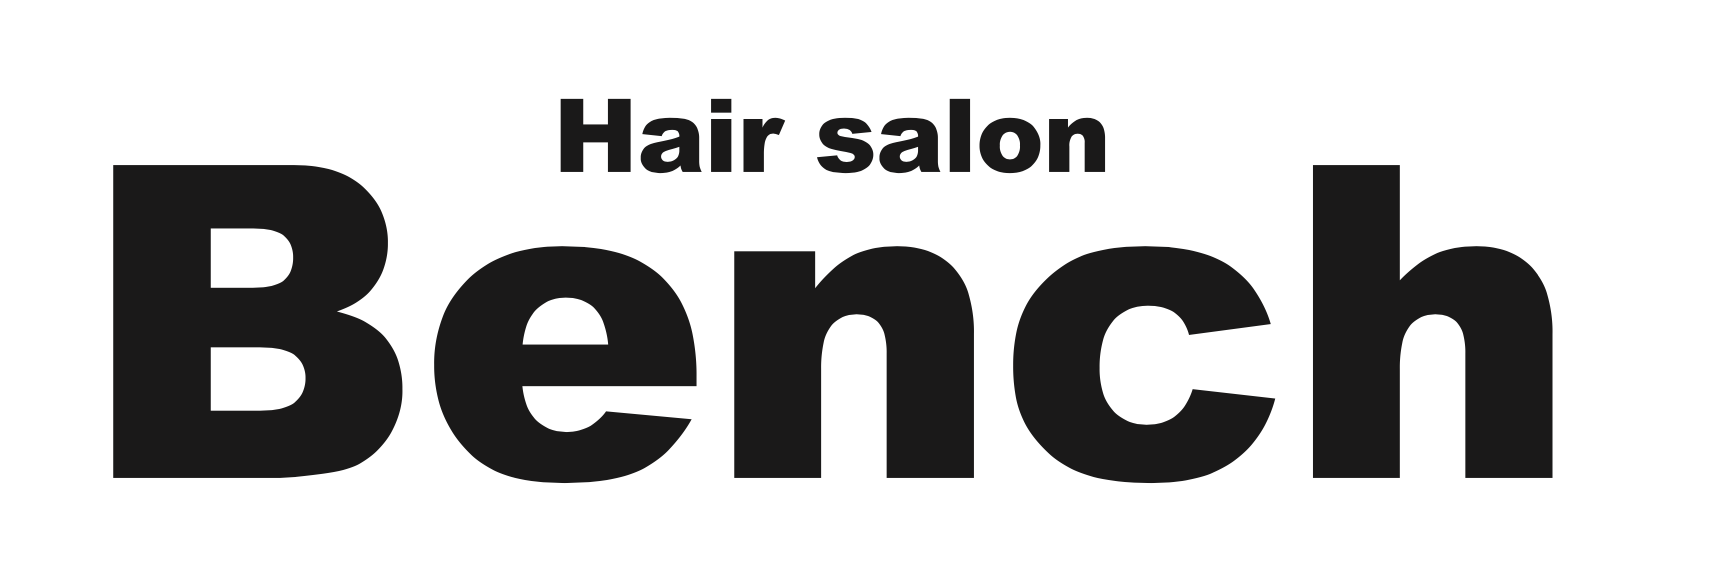 Hair salon Bench